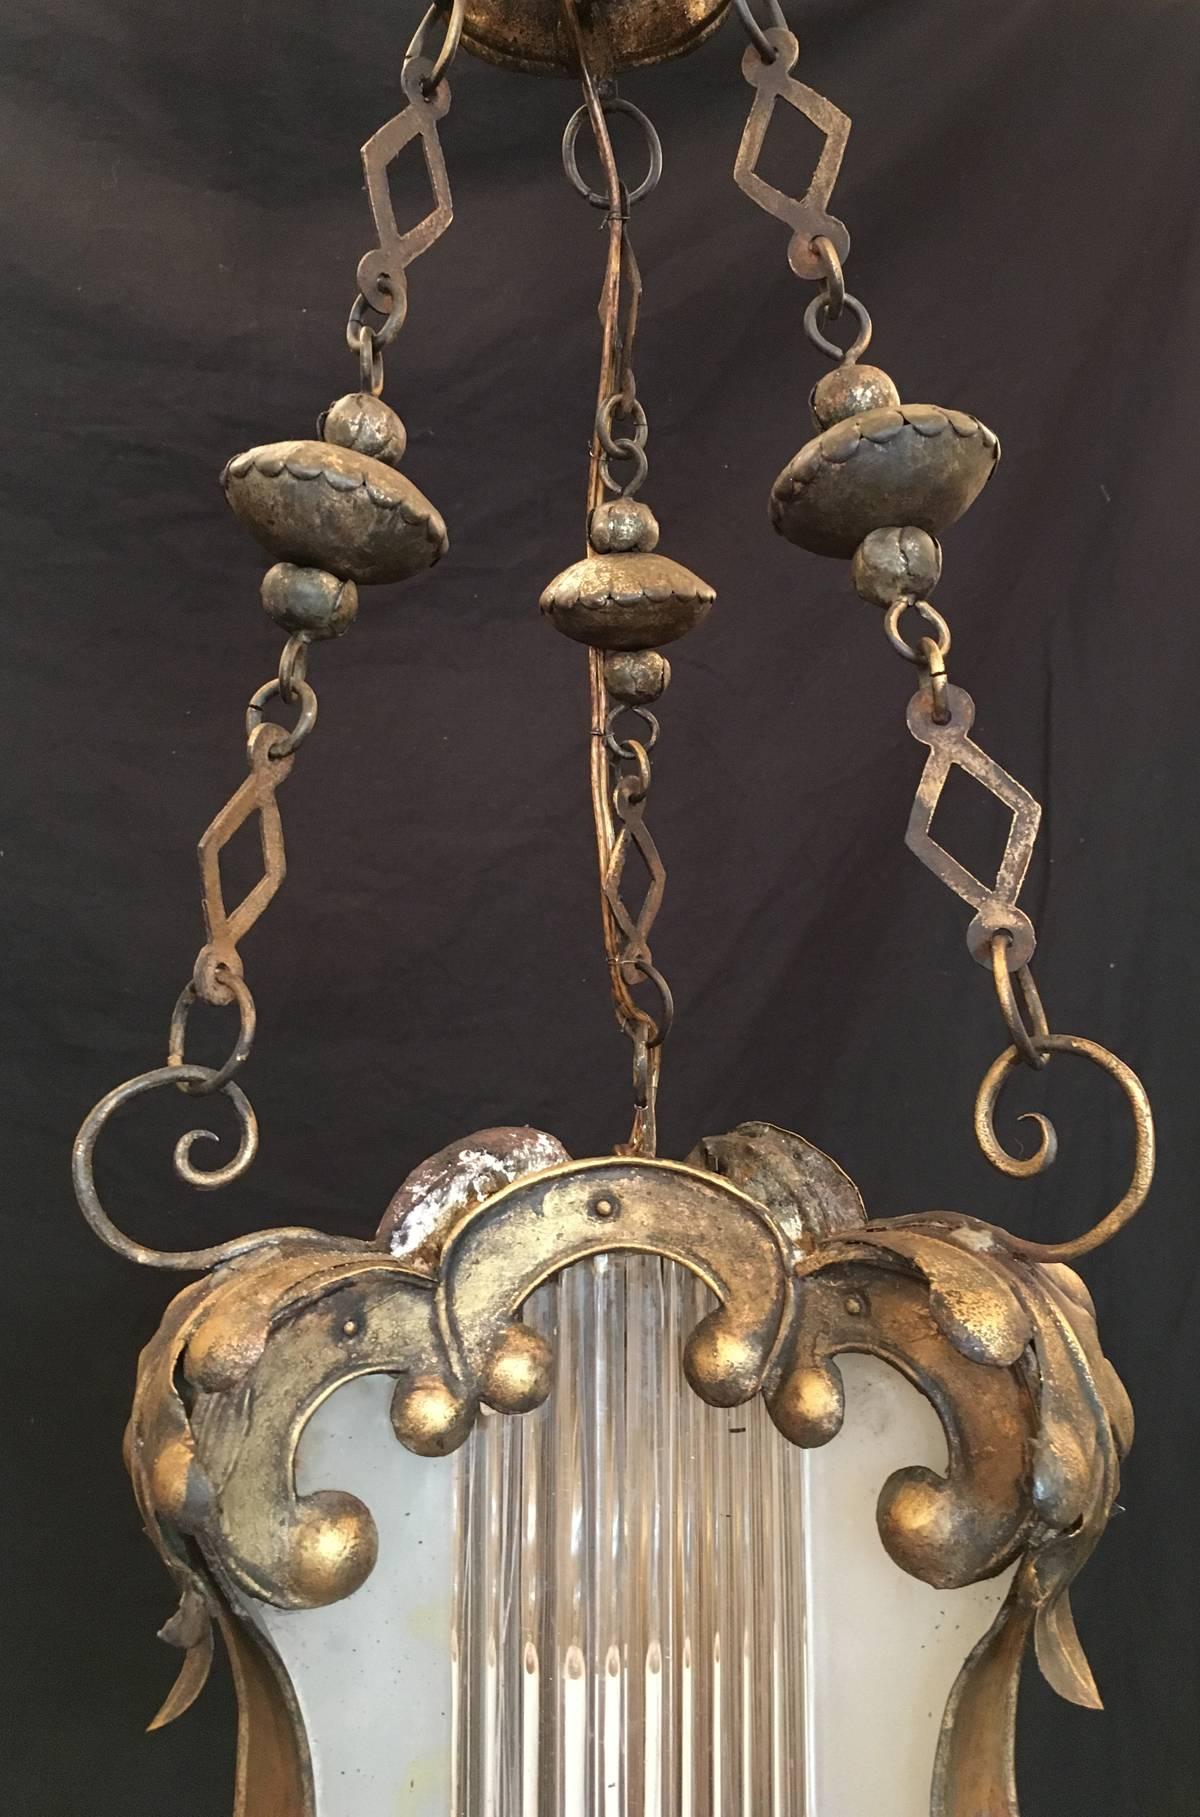 Cette lanterne baroque a été fabriquée à Venise, en Italie, au XVIIIe siècle, vers 1760, et présente un corps en étain doré couvert de volutes et de motifs floraux. Le centre en verre dépoli contient des tiges en verre soufflé vénitien et était à